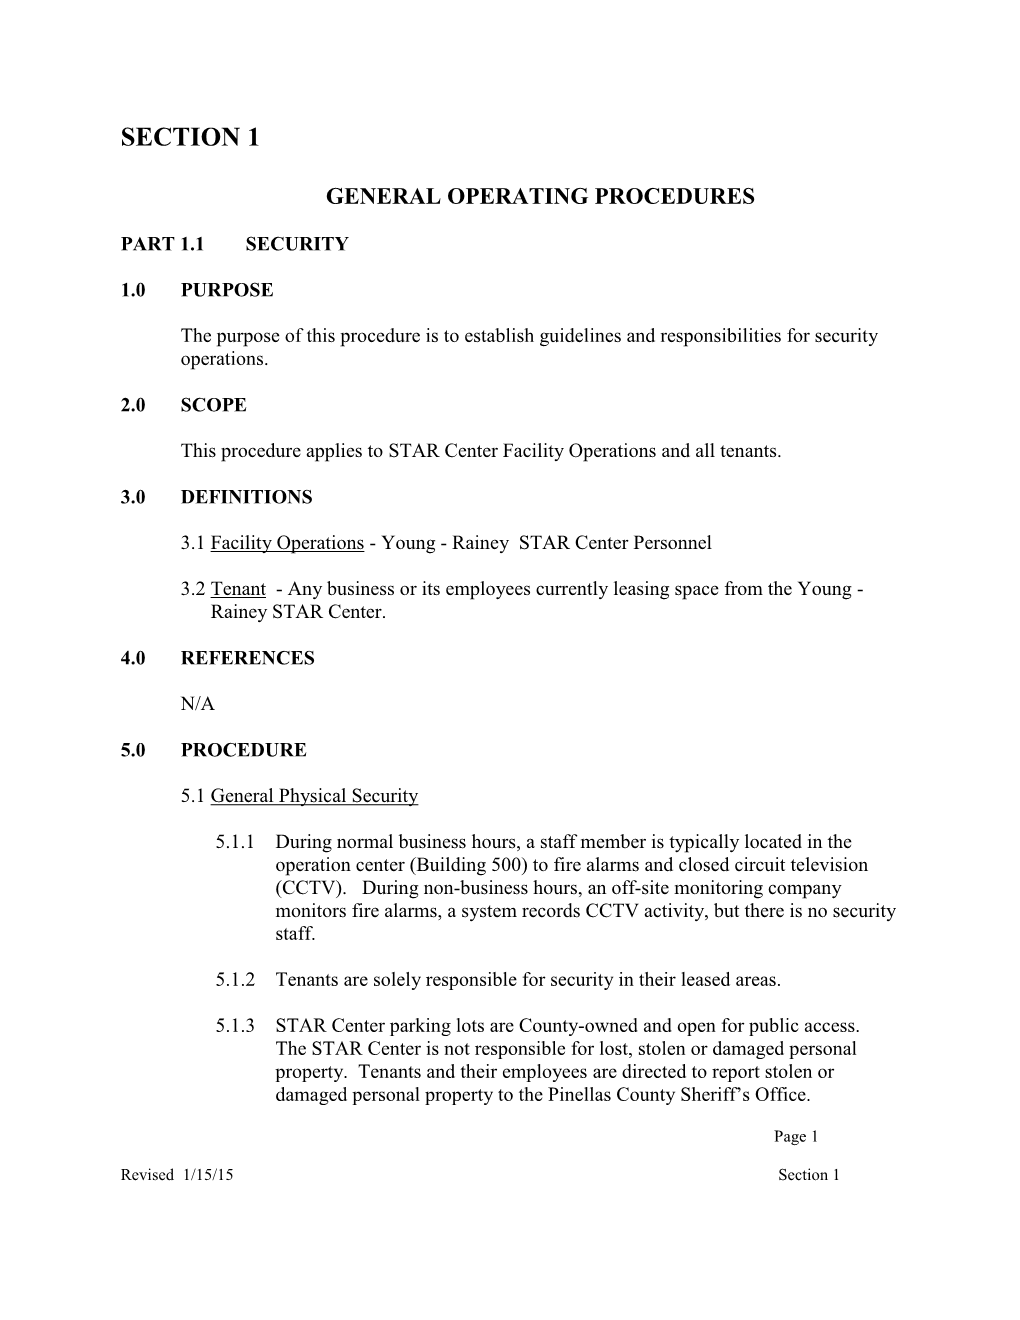 General Operating Procedures 2015